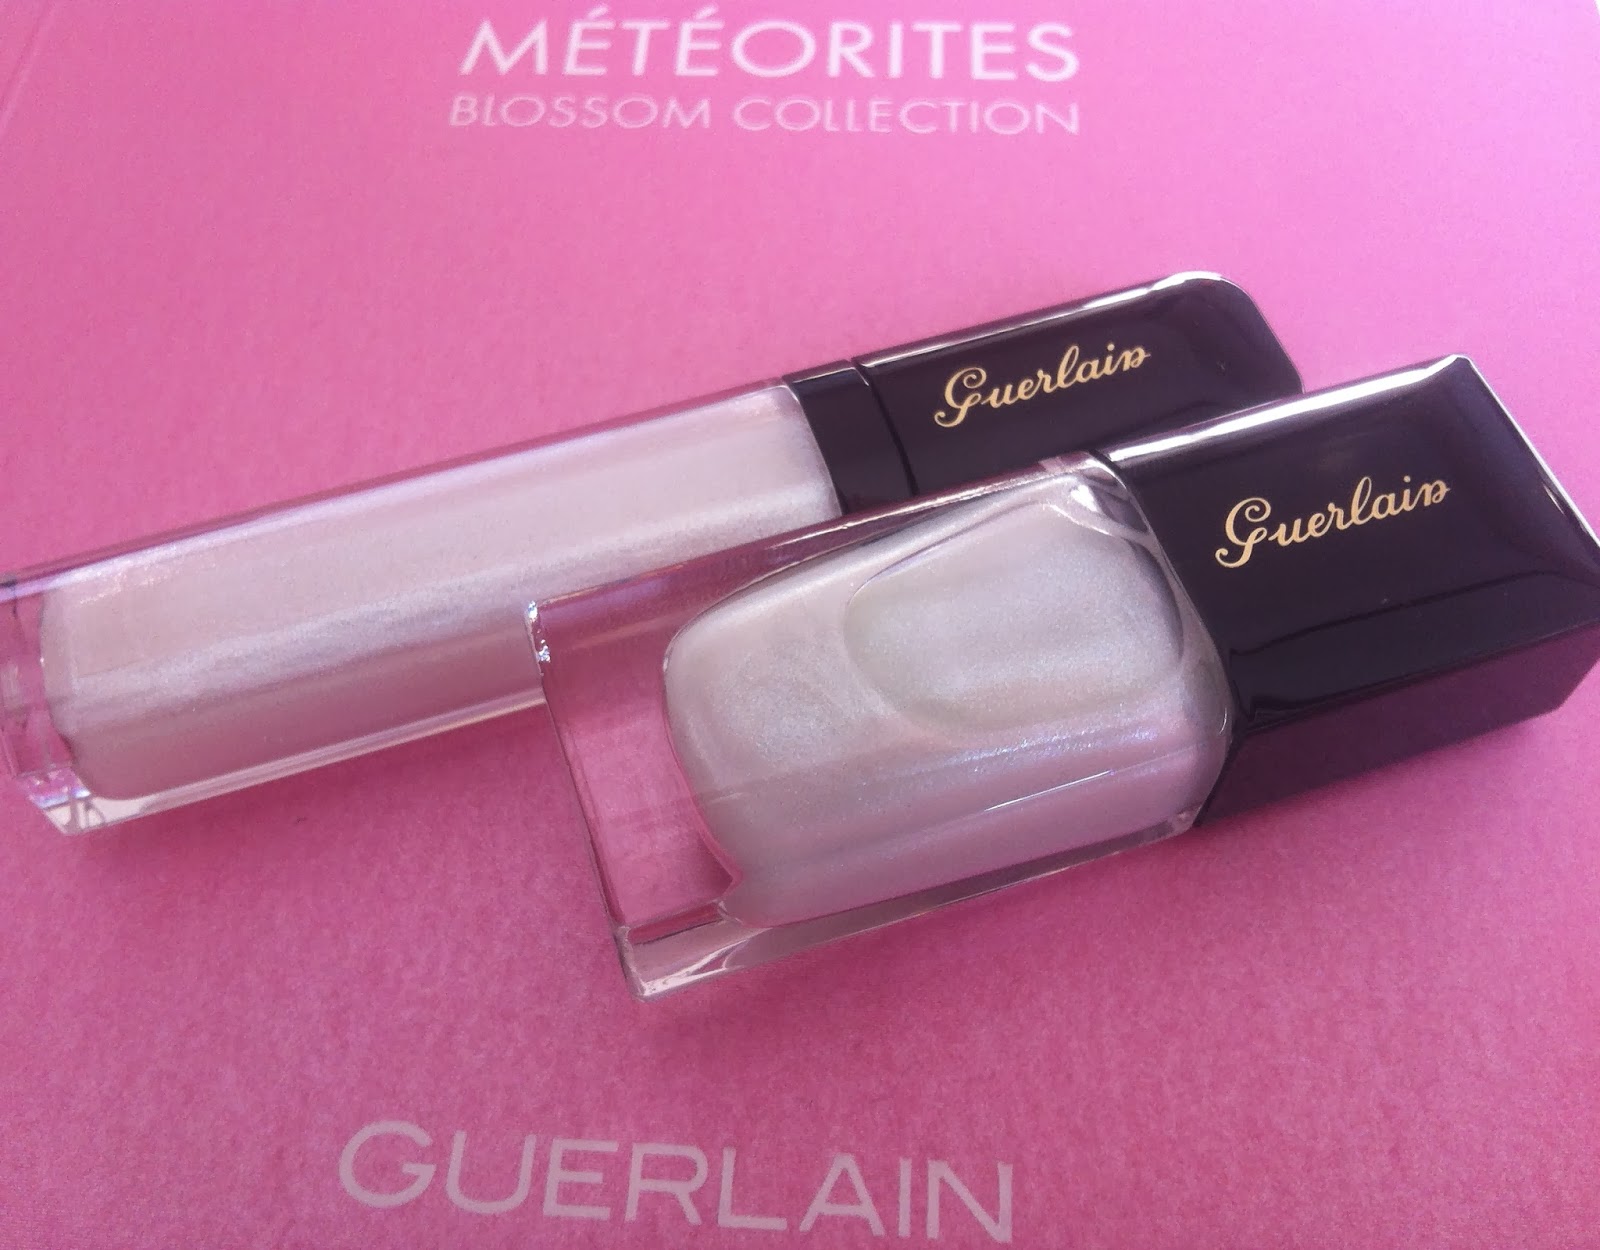 Guerlain make up spring 2014 Météorites Blossom Collection, gloss d'enfer star dust, la laque couleur star dust